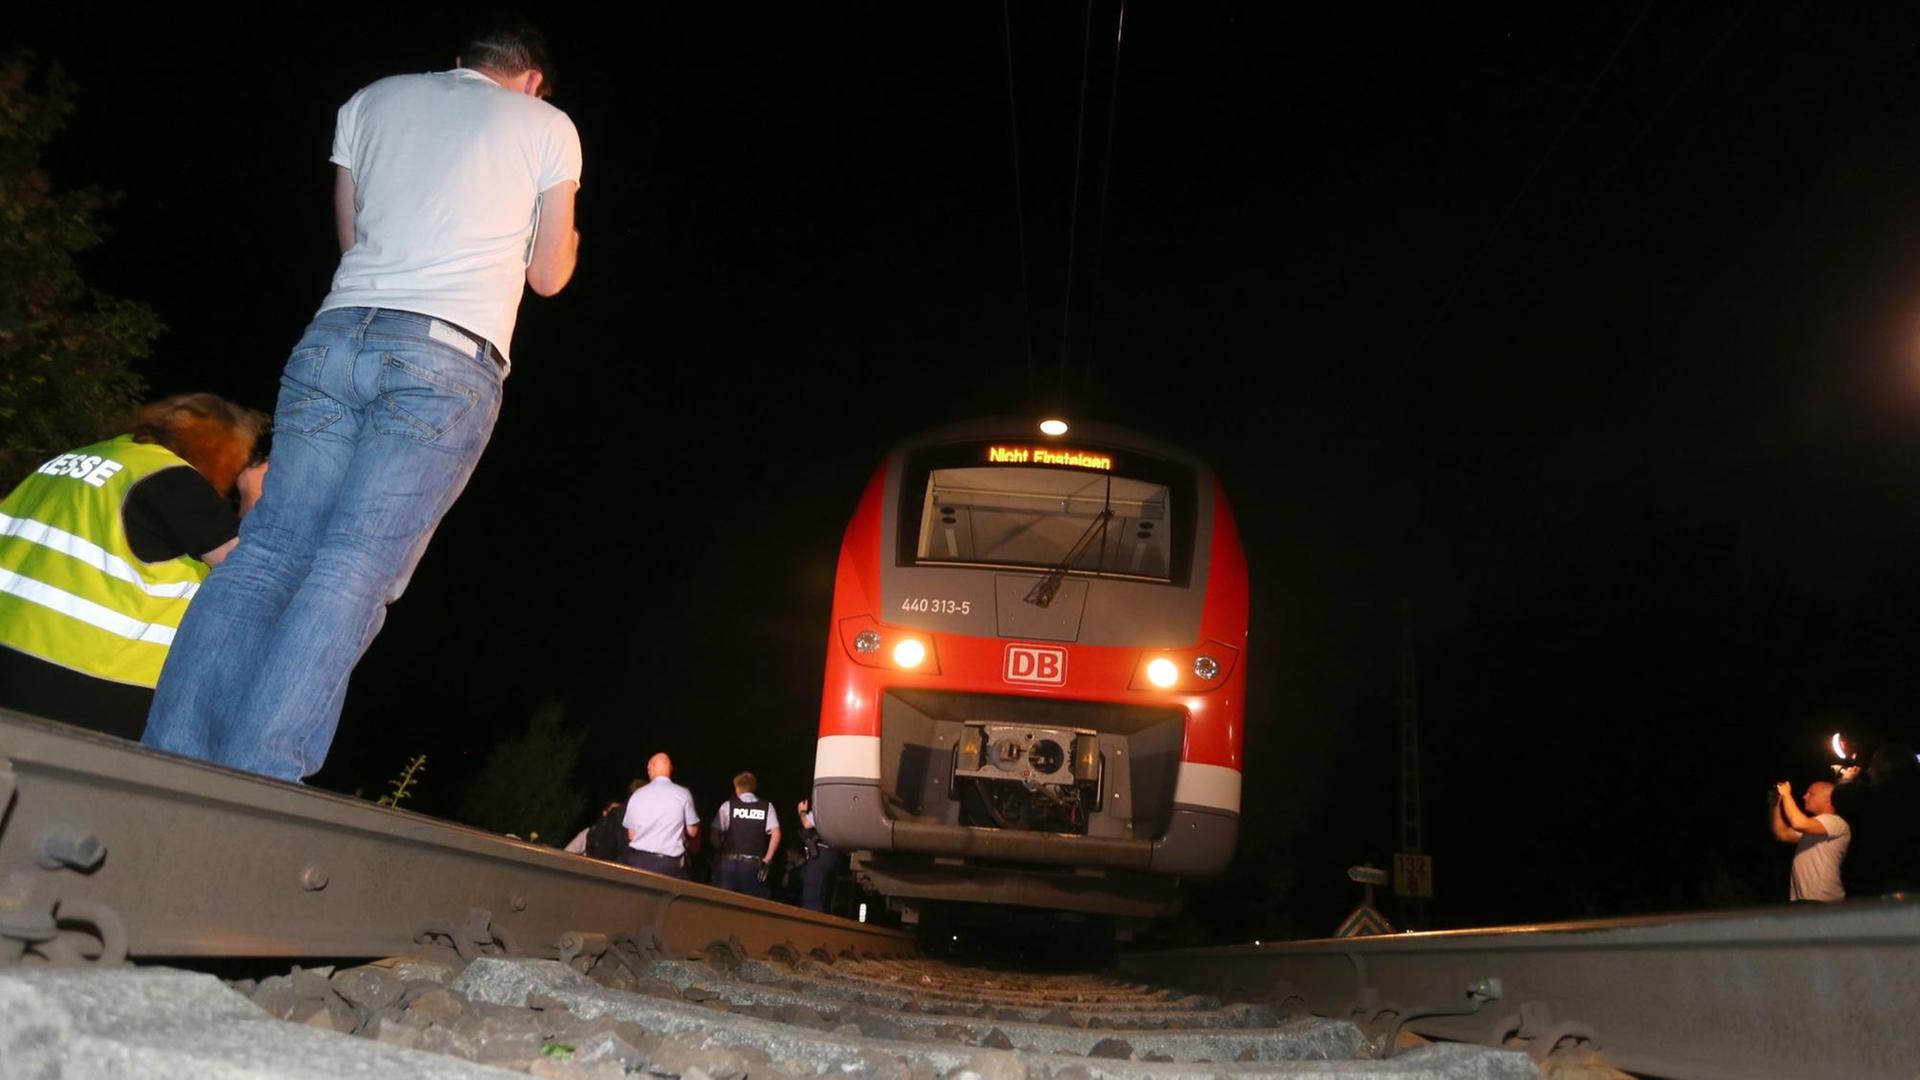 Polizisten stehen am 18.07.2016 in Würzburg (Bayern) neben einem Regionalzug. Ein Mann hat in dem Zug Reisende angegriffen und laut Polizei mehrere Menschen lebensgefährlich verletzt. Nach der Attacke wurde der Täter von der Polizei auf der Flucht erschossen.